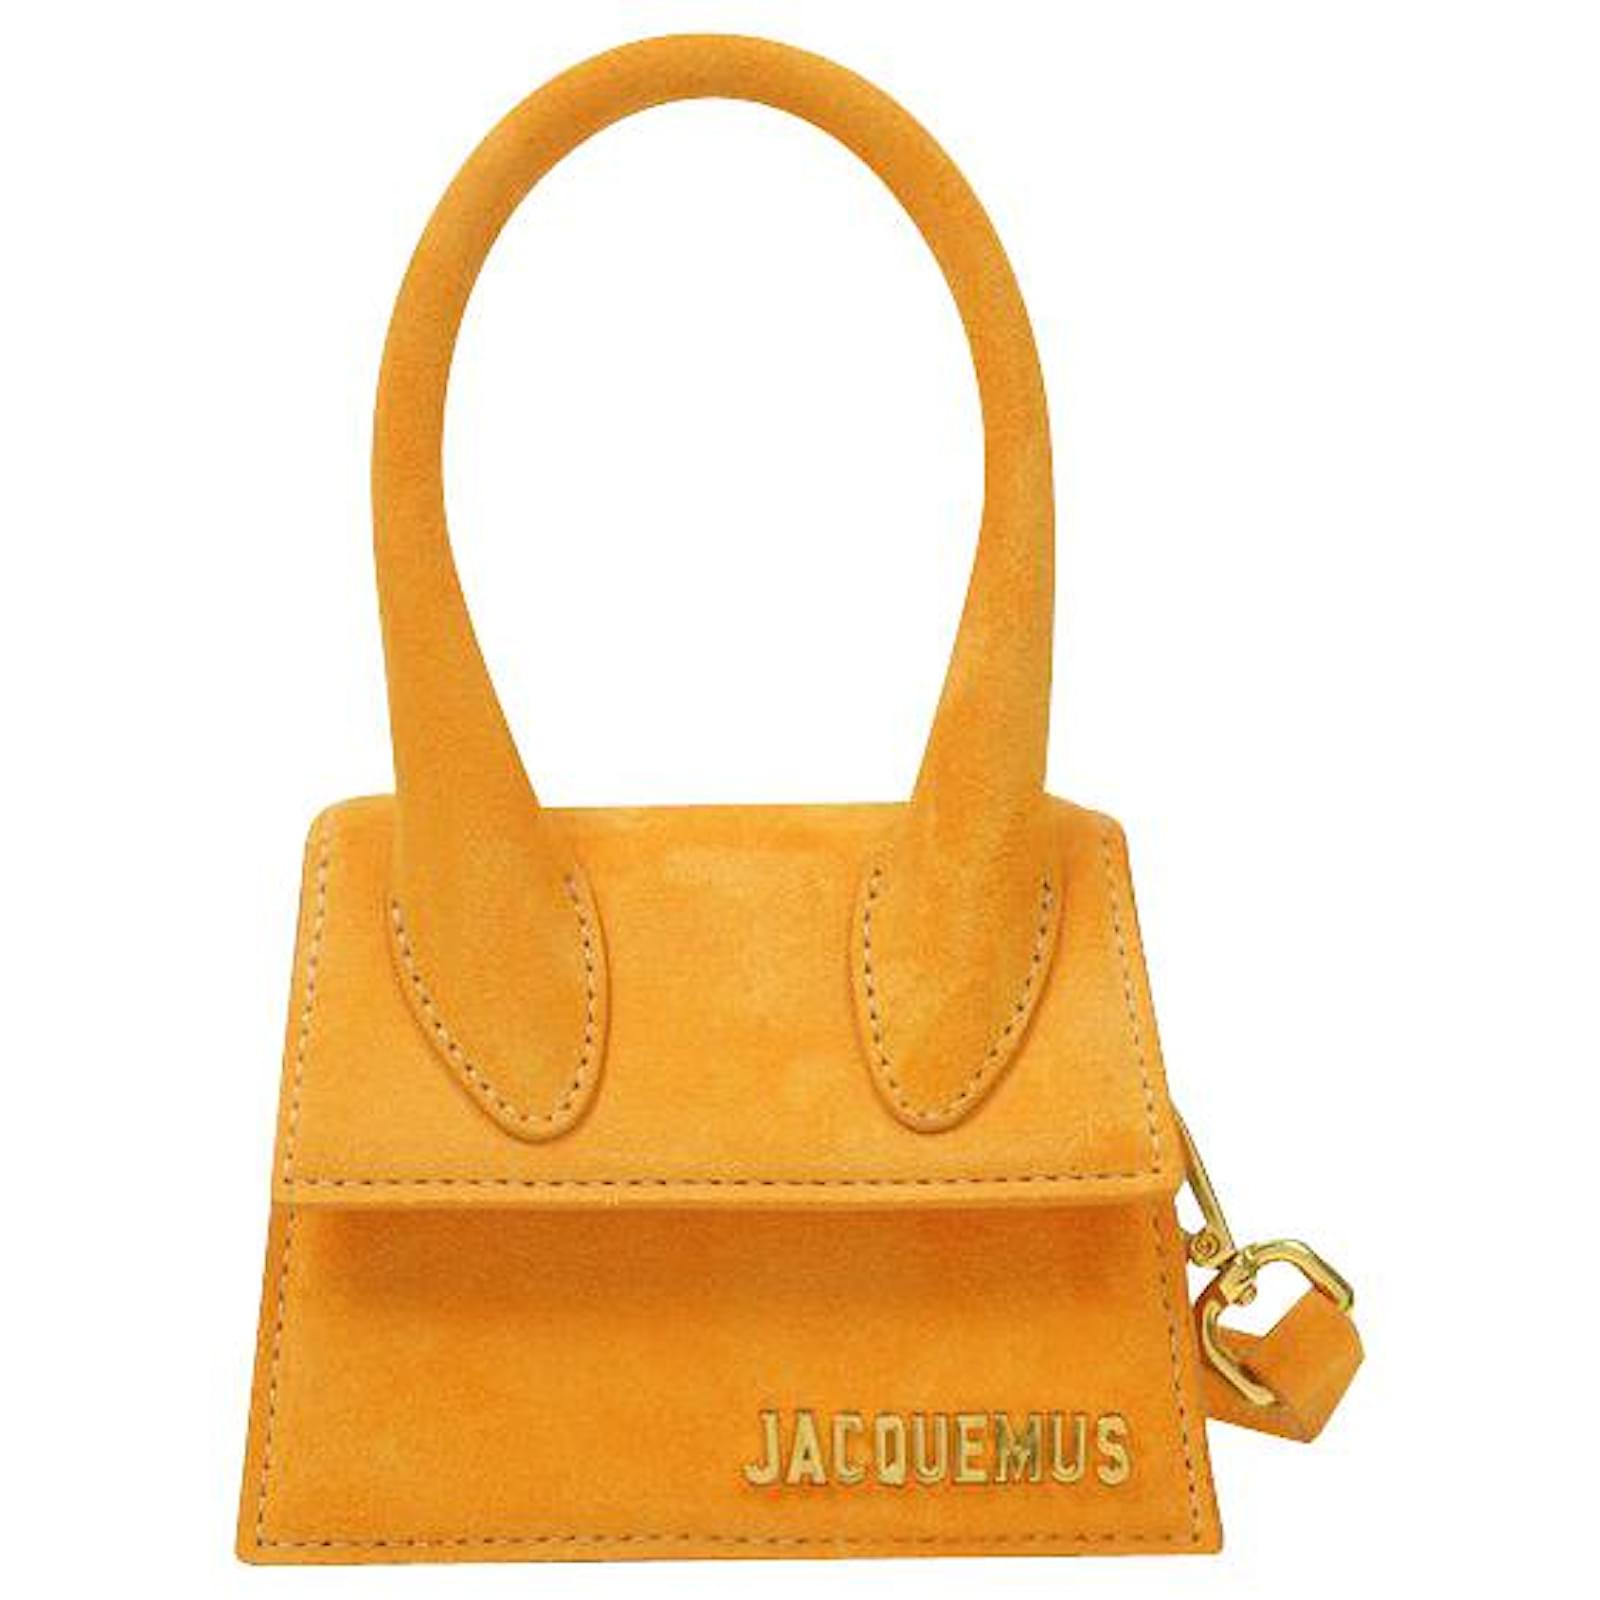 JACQUEMUS Le Chiquito Bag in Orange